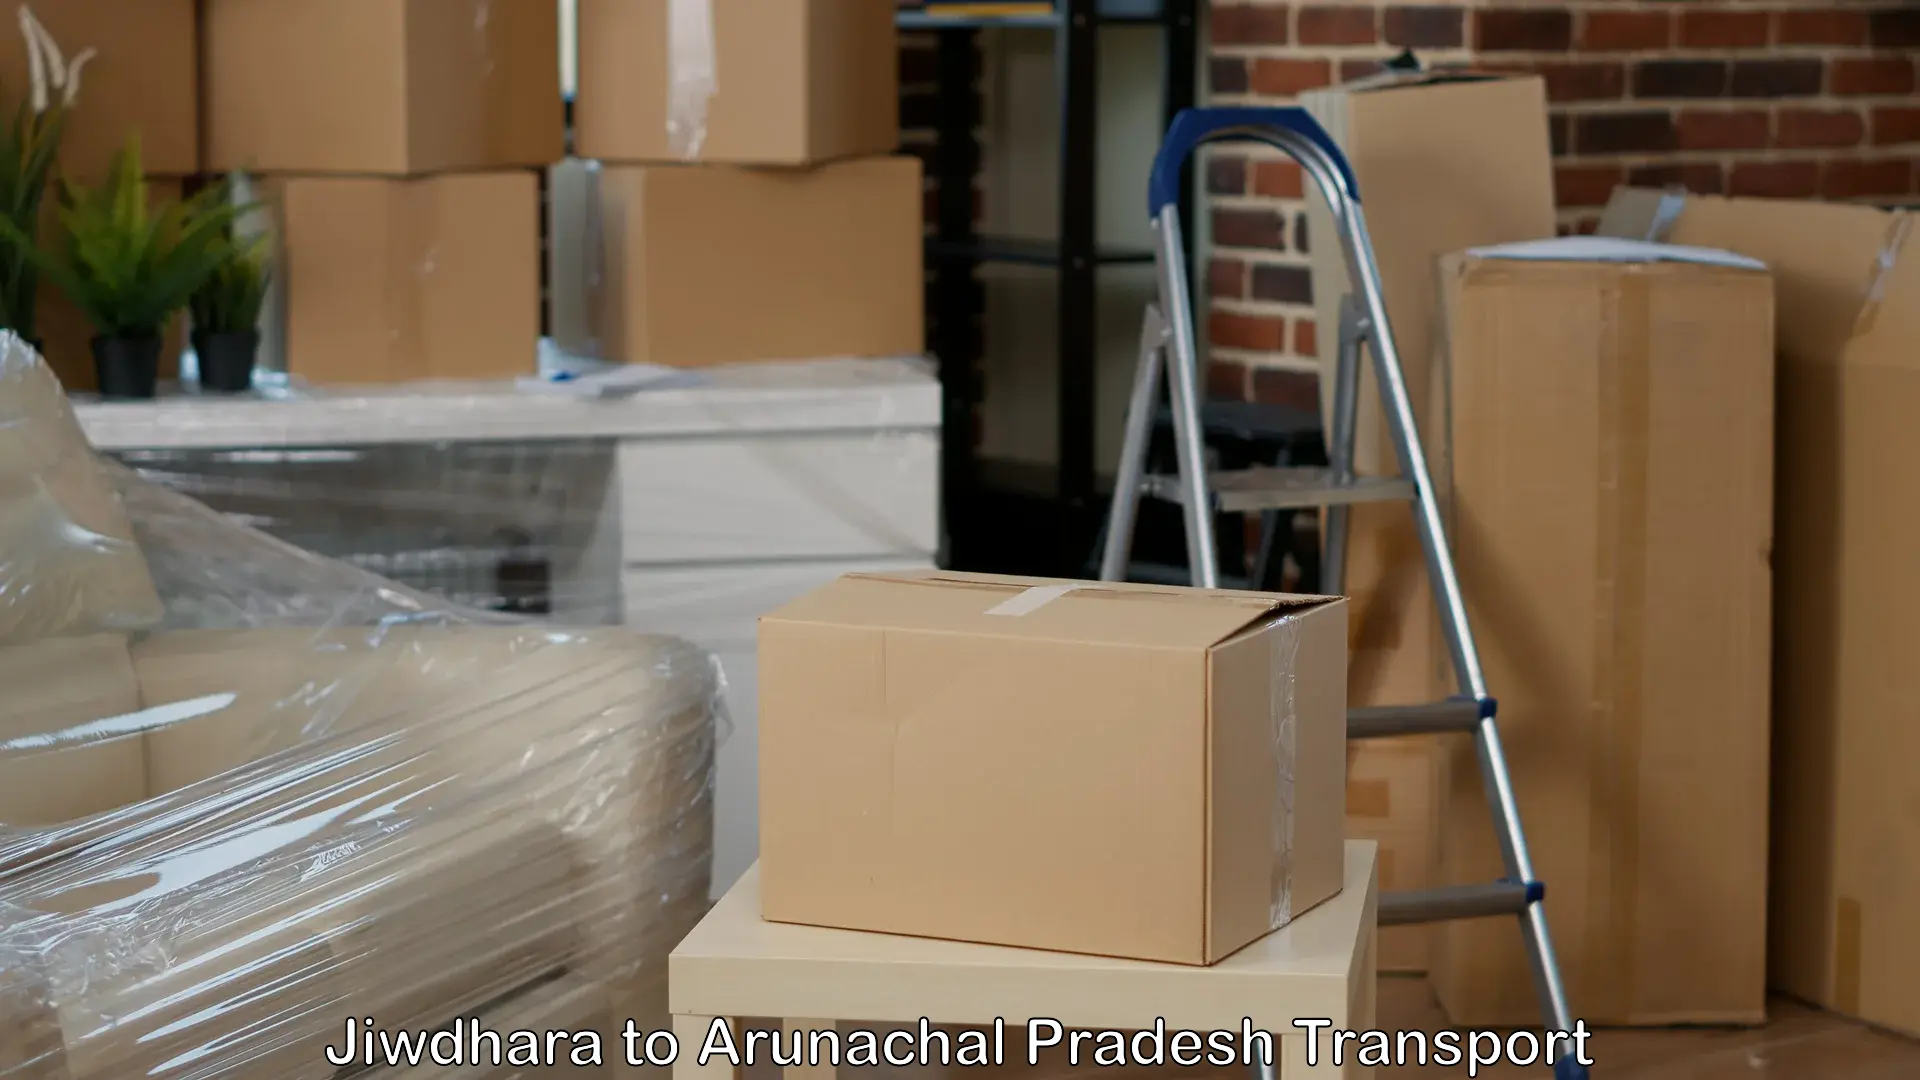 Land transport services in Jiwdhara to Arunachal Pradesh